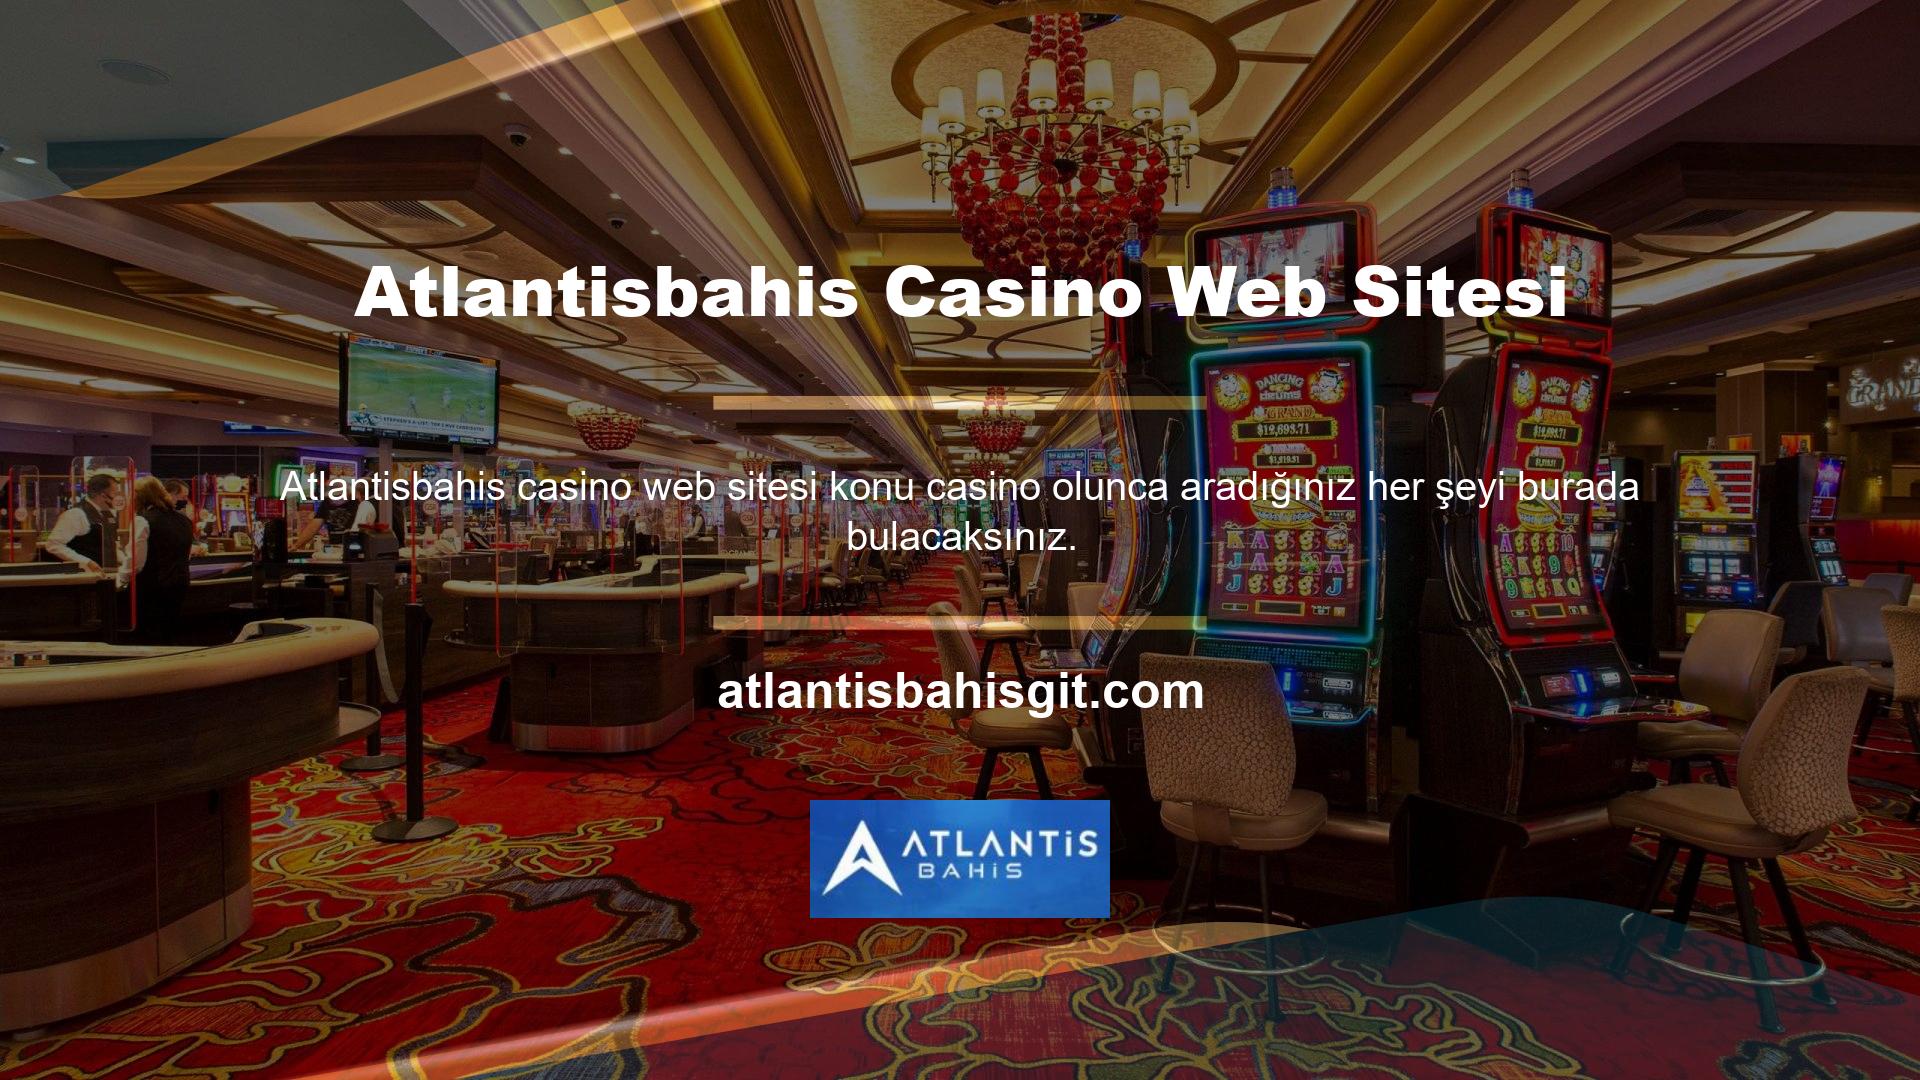 Casino sitesi olarak bilinir ve sektörde iyi bir üne sahiptir